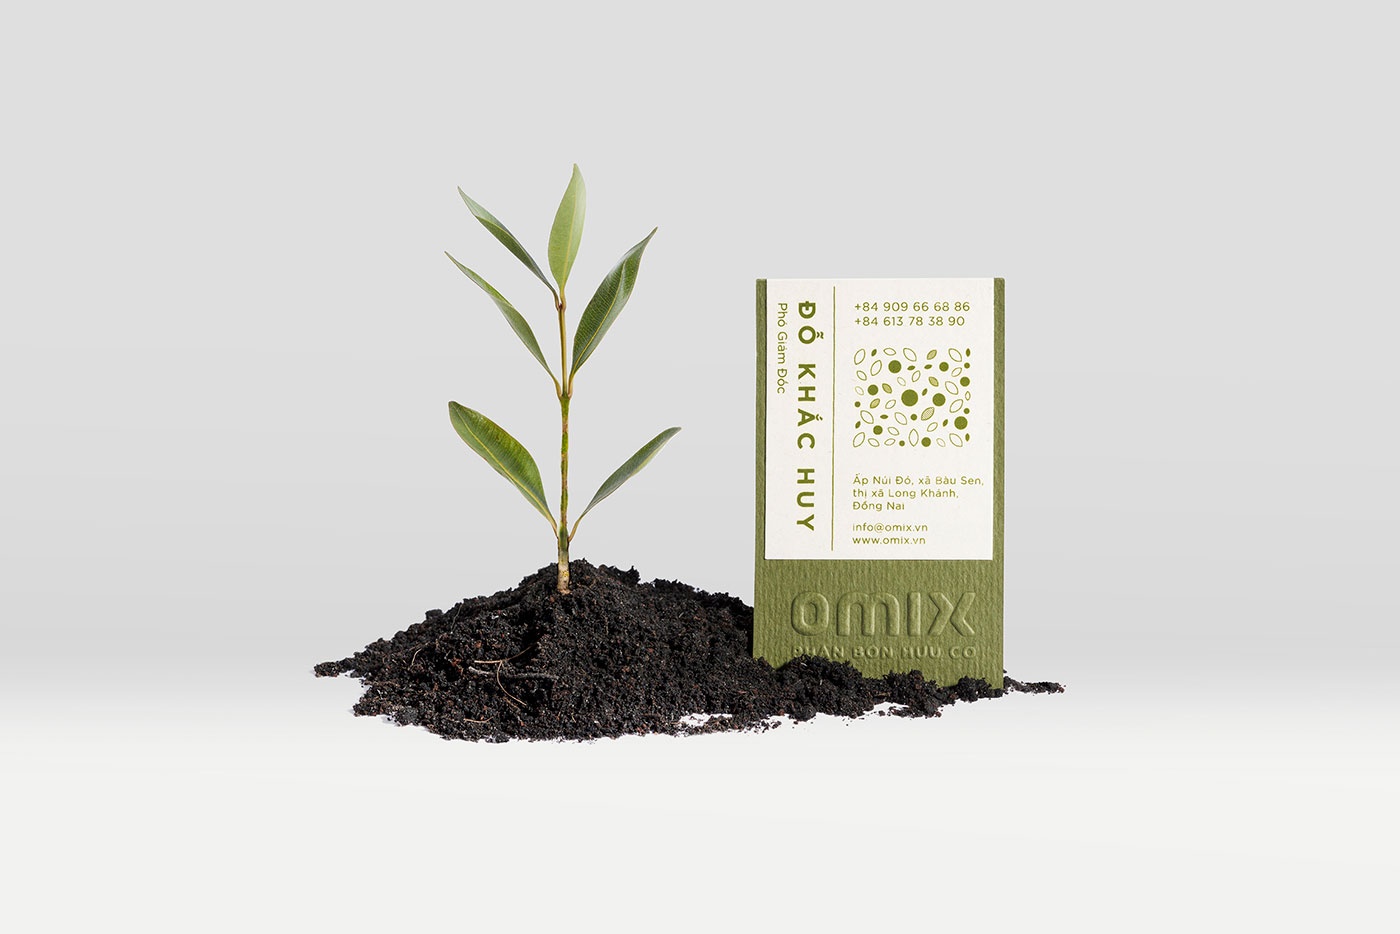 有机肥料品牌OMIX品牌视觉&包装设计